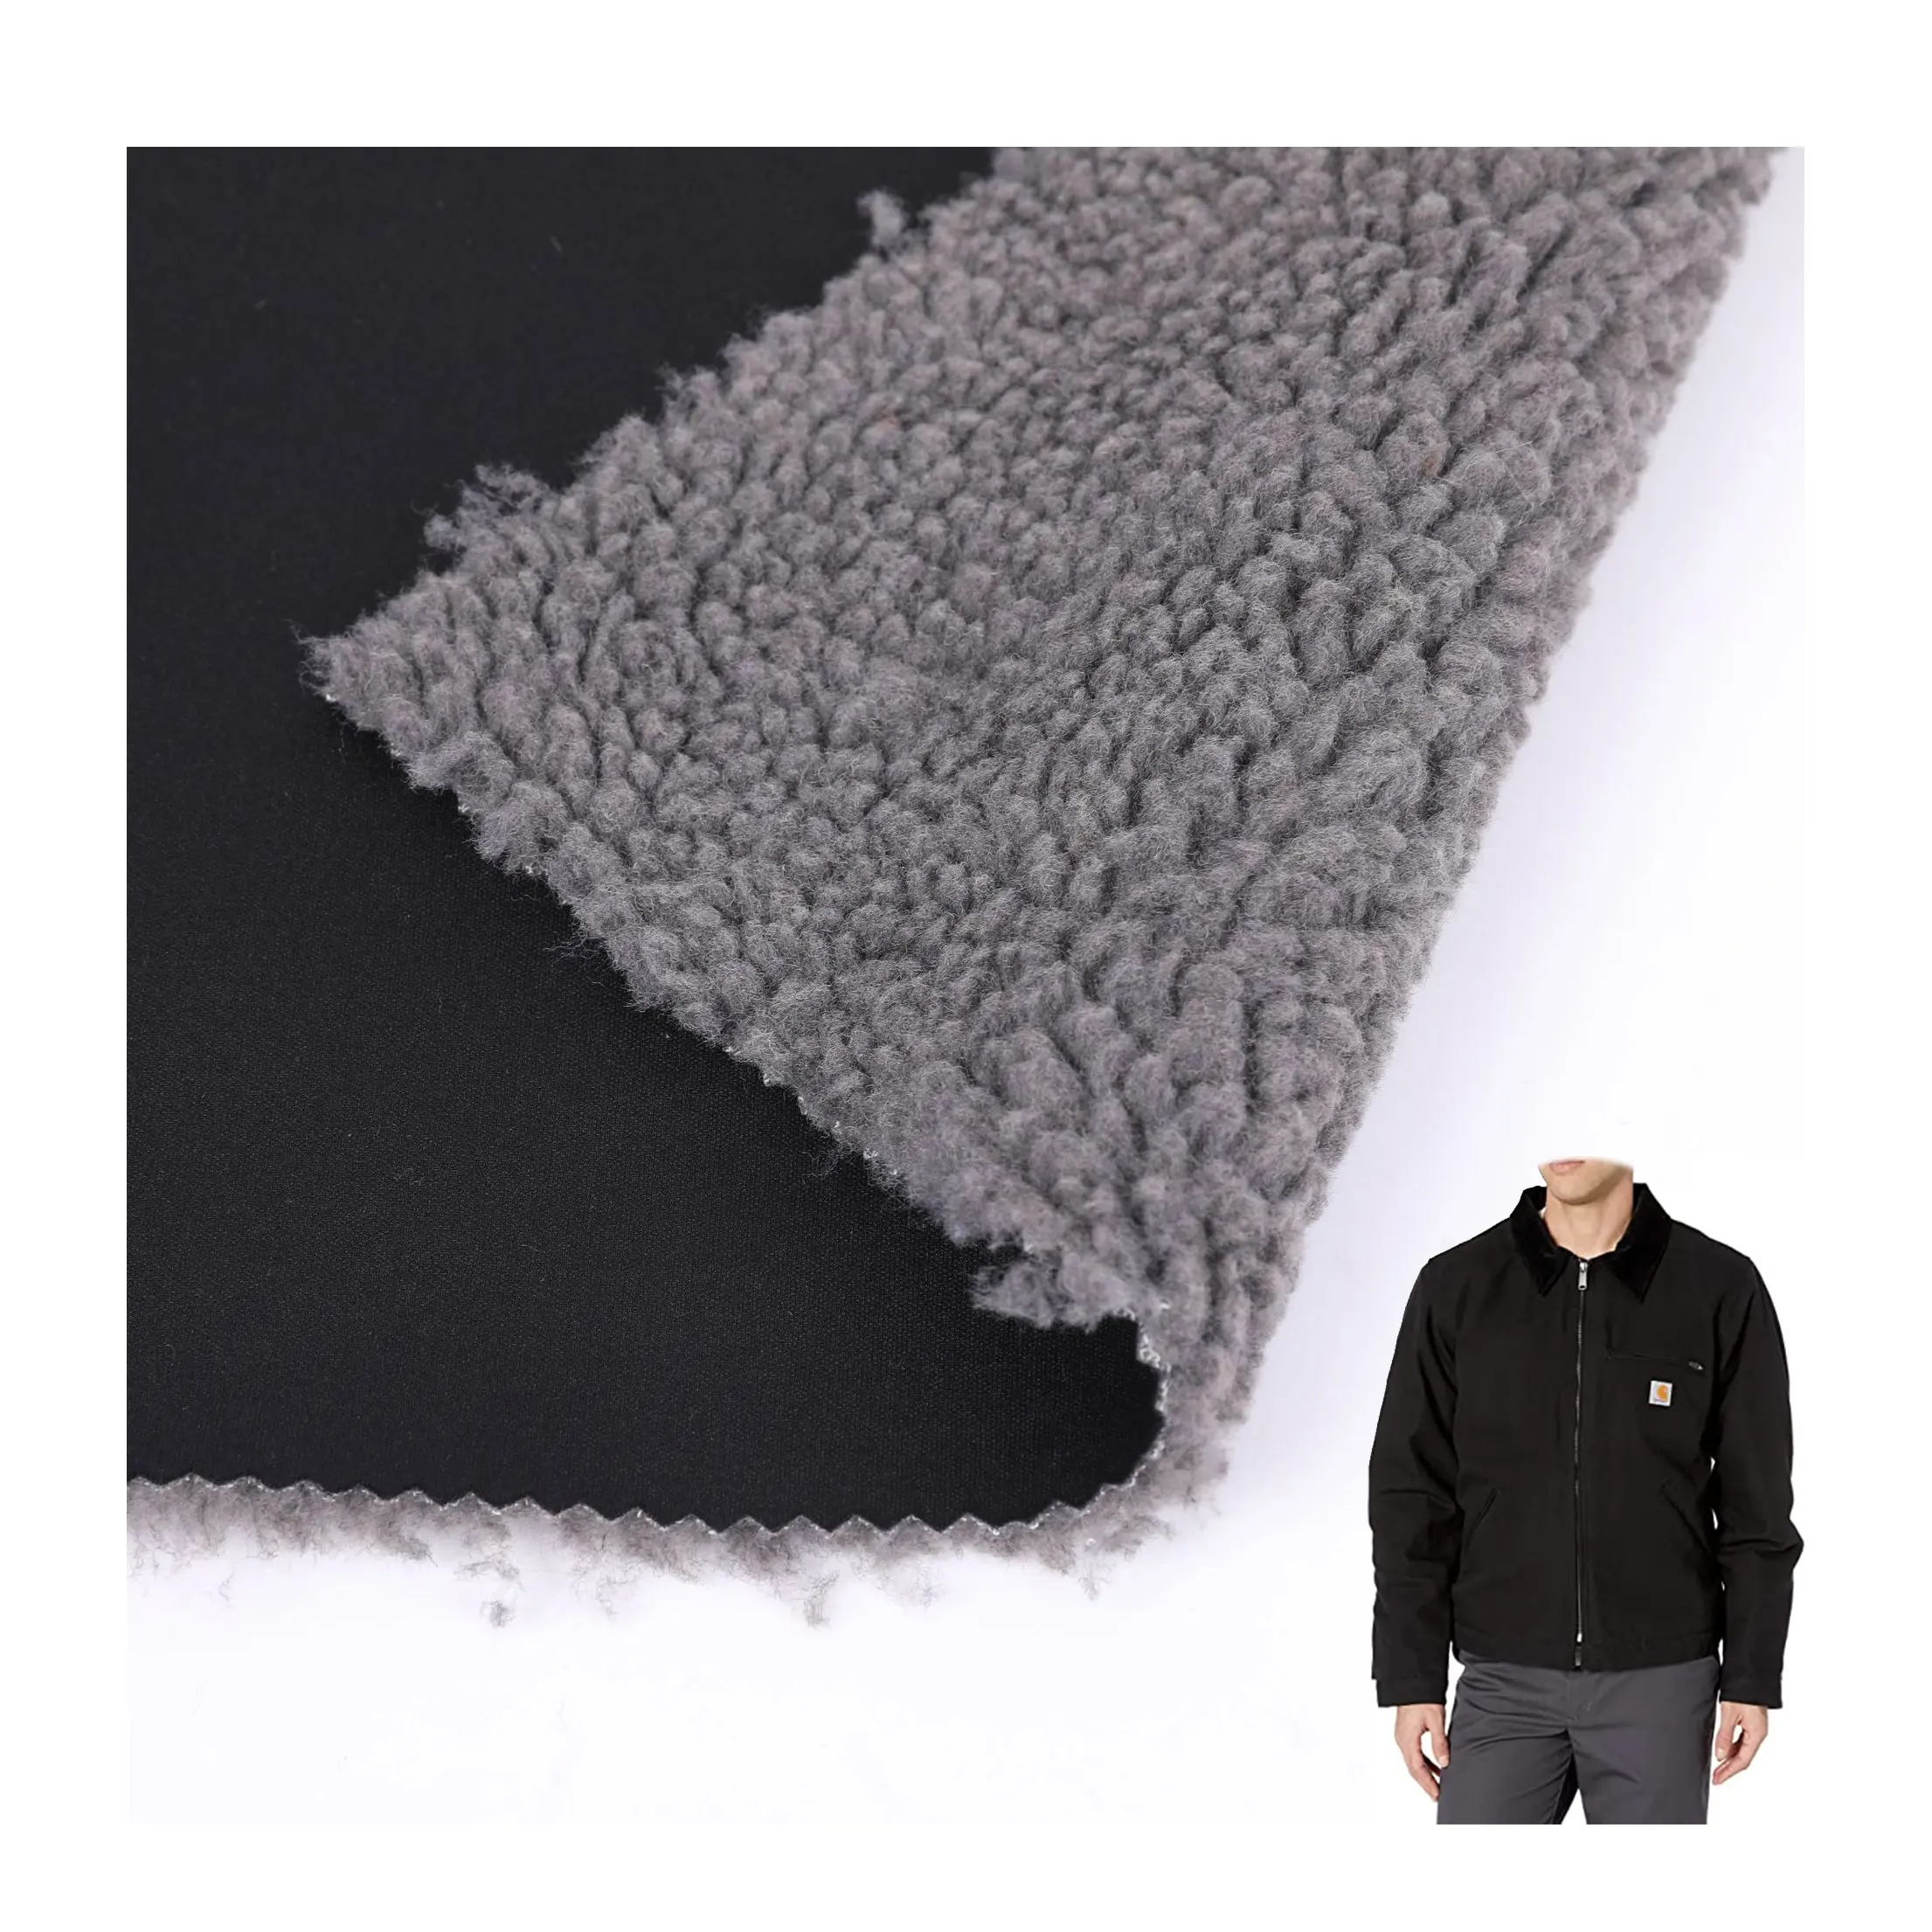 무거운 무게 셰르파 적층 레이어 시스템 겨울 코트 소재 따뜻하게 유지 양털 원단